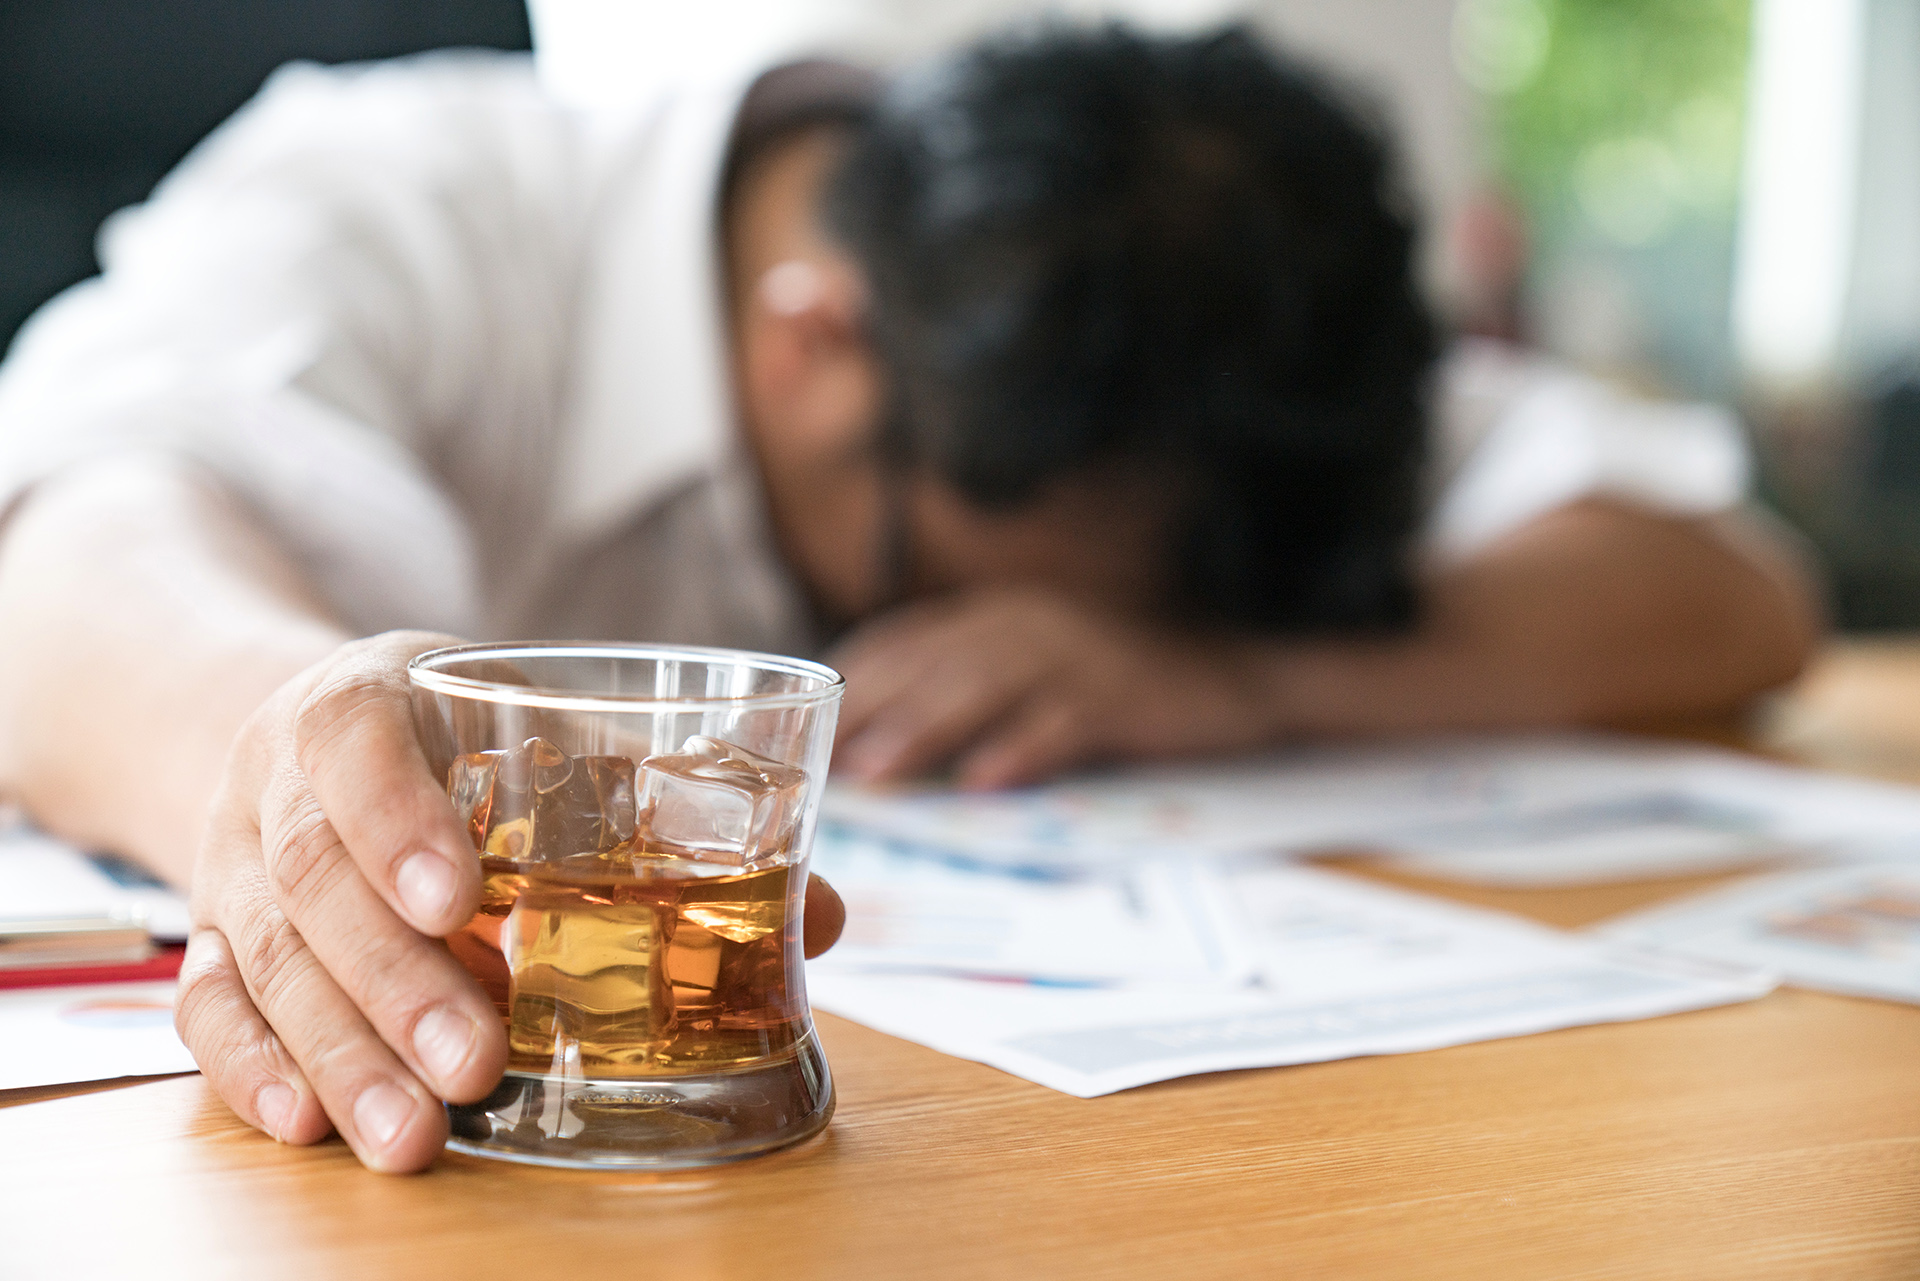 David Nutt, el científico detrás de Alcarelle afirma que el alcohol es una de las bebidas más peligrosas para la sociedad, incluso por encima de el crack y el LSD. (Shutterstock)